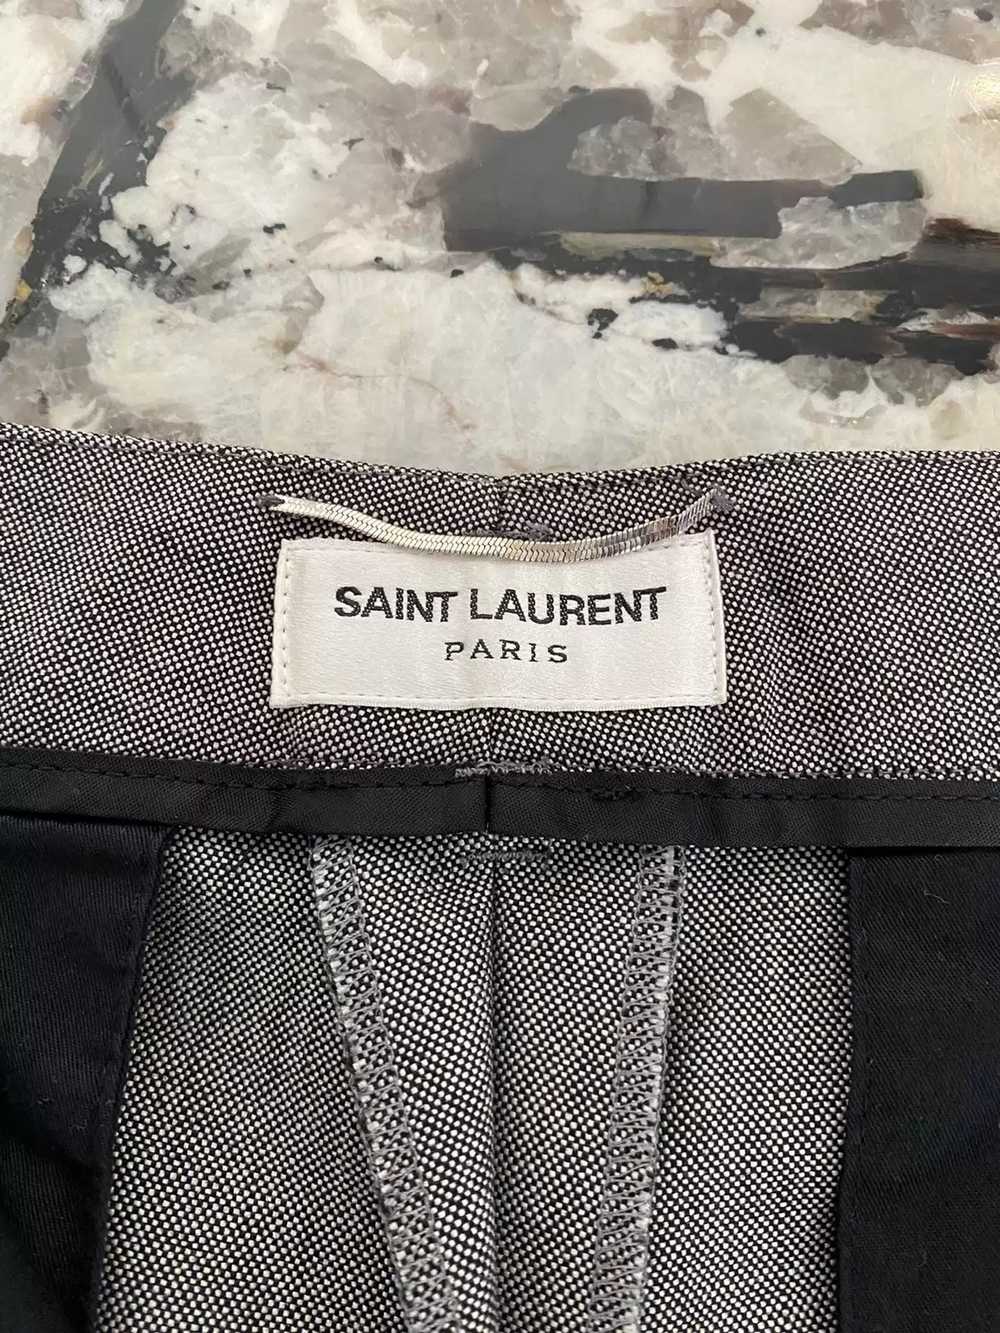 Yves Saint Laurent Saint Laurent Pant Size 50 - image 3